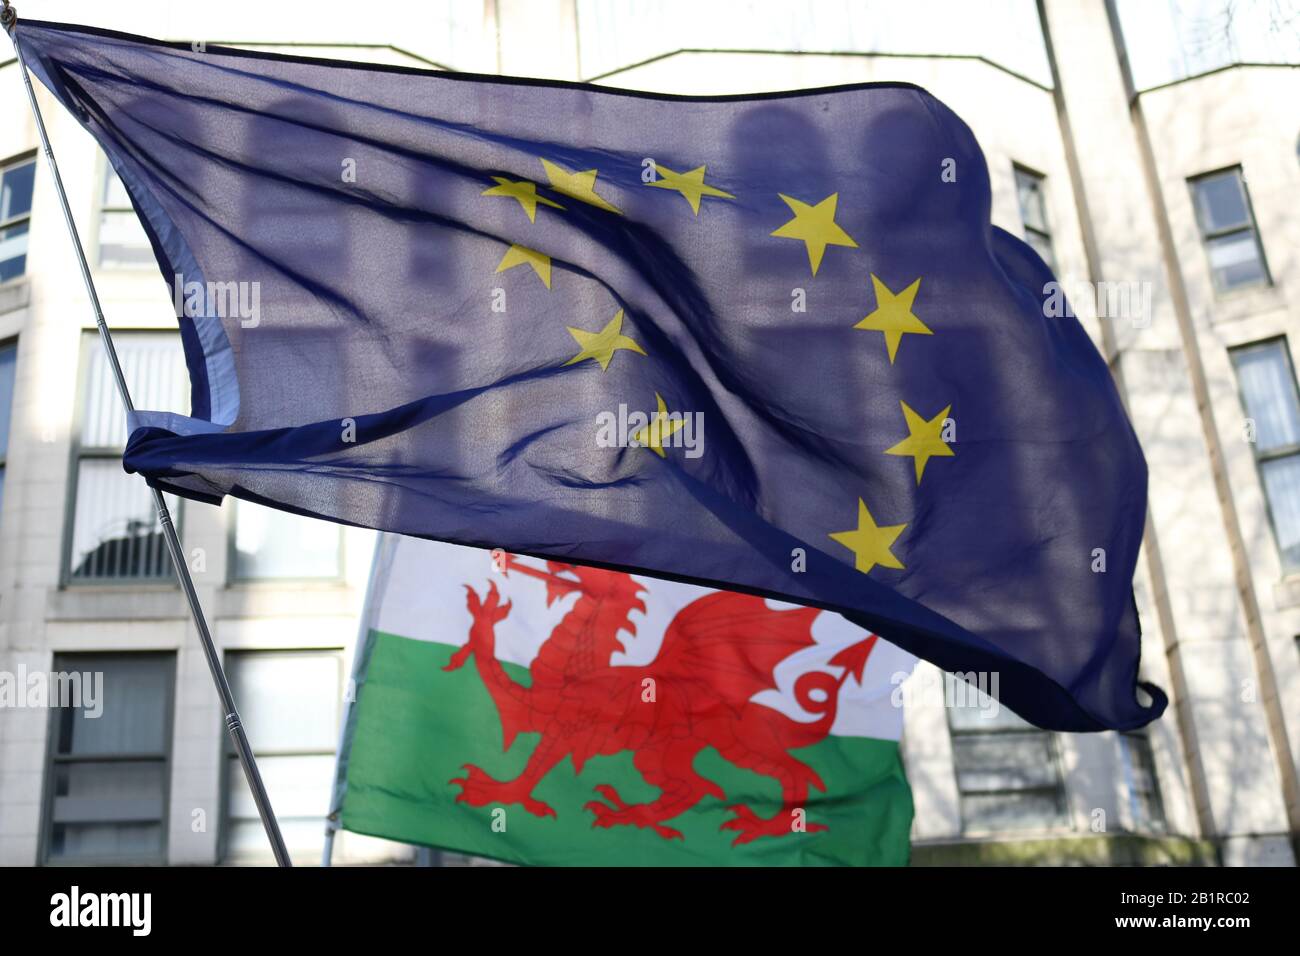 Un drapeau gallois du Dragon peut être vu derrière un drapeau de l'UE lors de la manifestation de Cardiff pour le Brexit en Europe. Banque D'Images